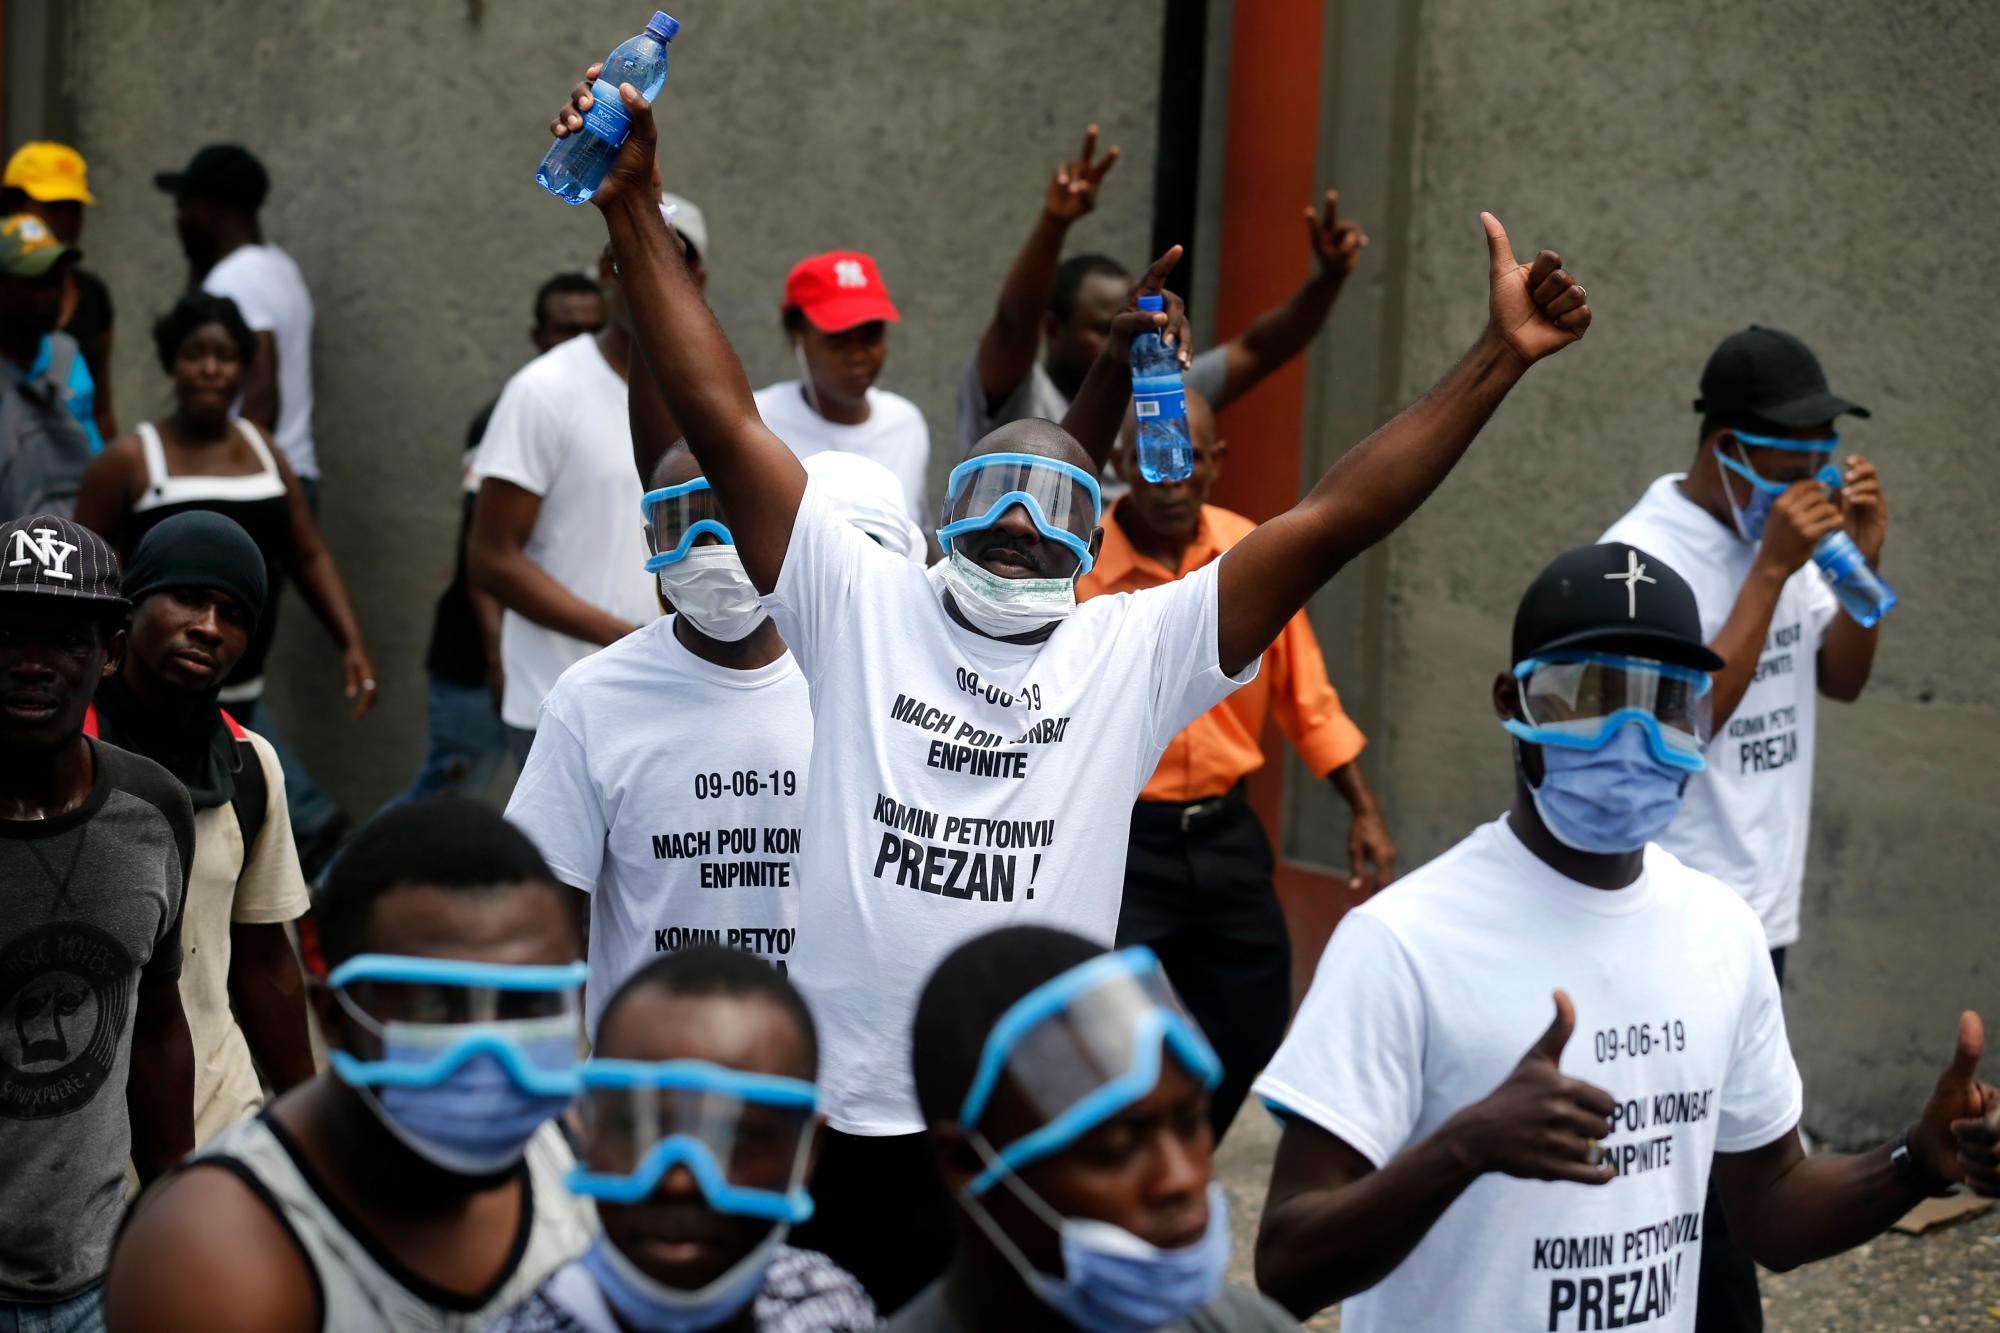 Los manifestantes gesto a la cámara durante una protesta exigiendo la renuncia del Presidente Jovenel Moise en Puerto Príncipe, Haití, el domingo 9 de junio de 2019. Los manifestantes exigen una mayor investigación sobre el destino de los fondos que resultaron de los envíos de petróleo subvencionados procedentes de Venezuela.